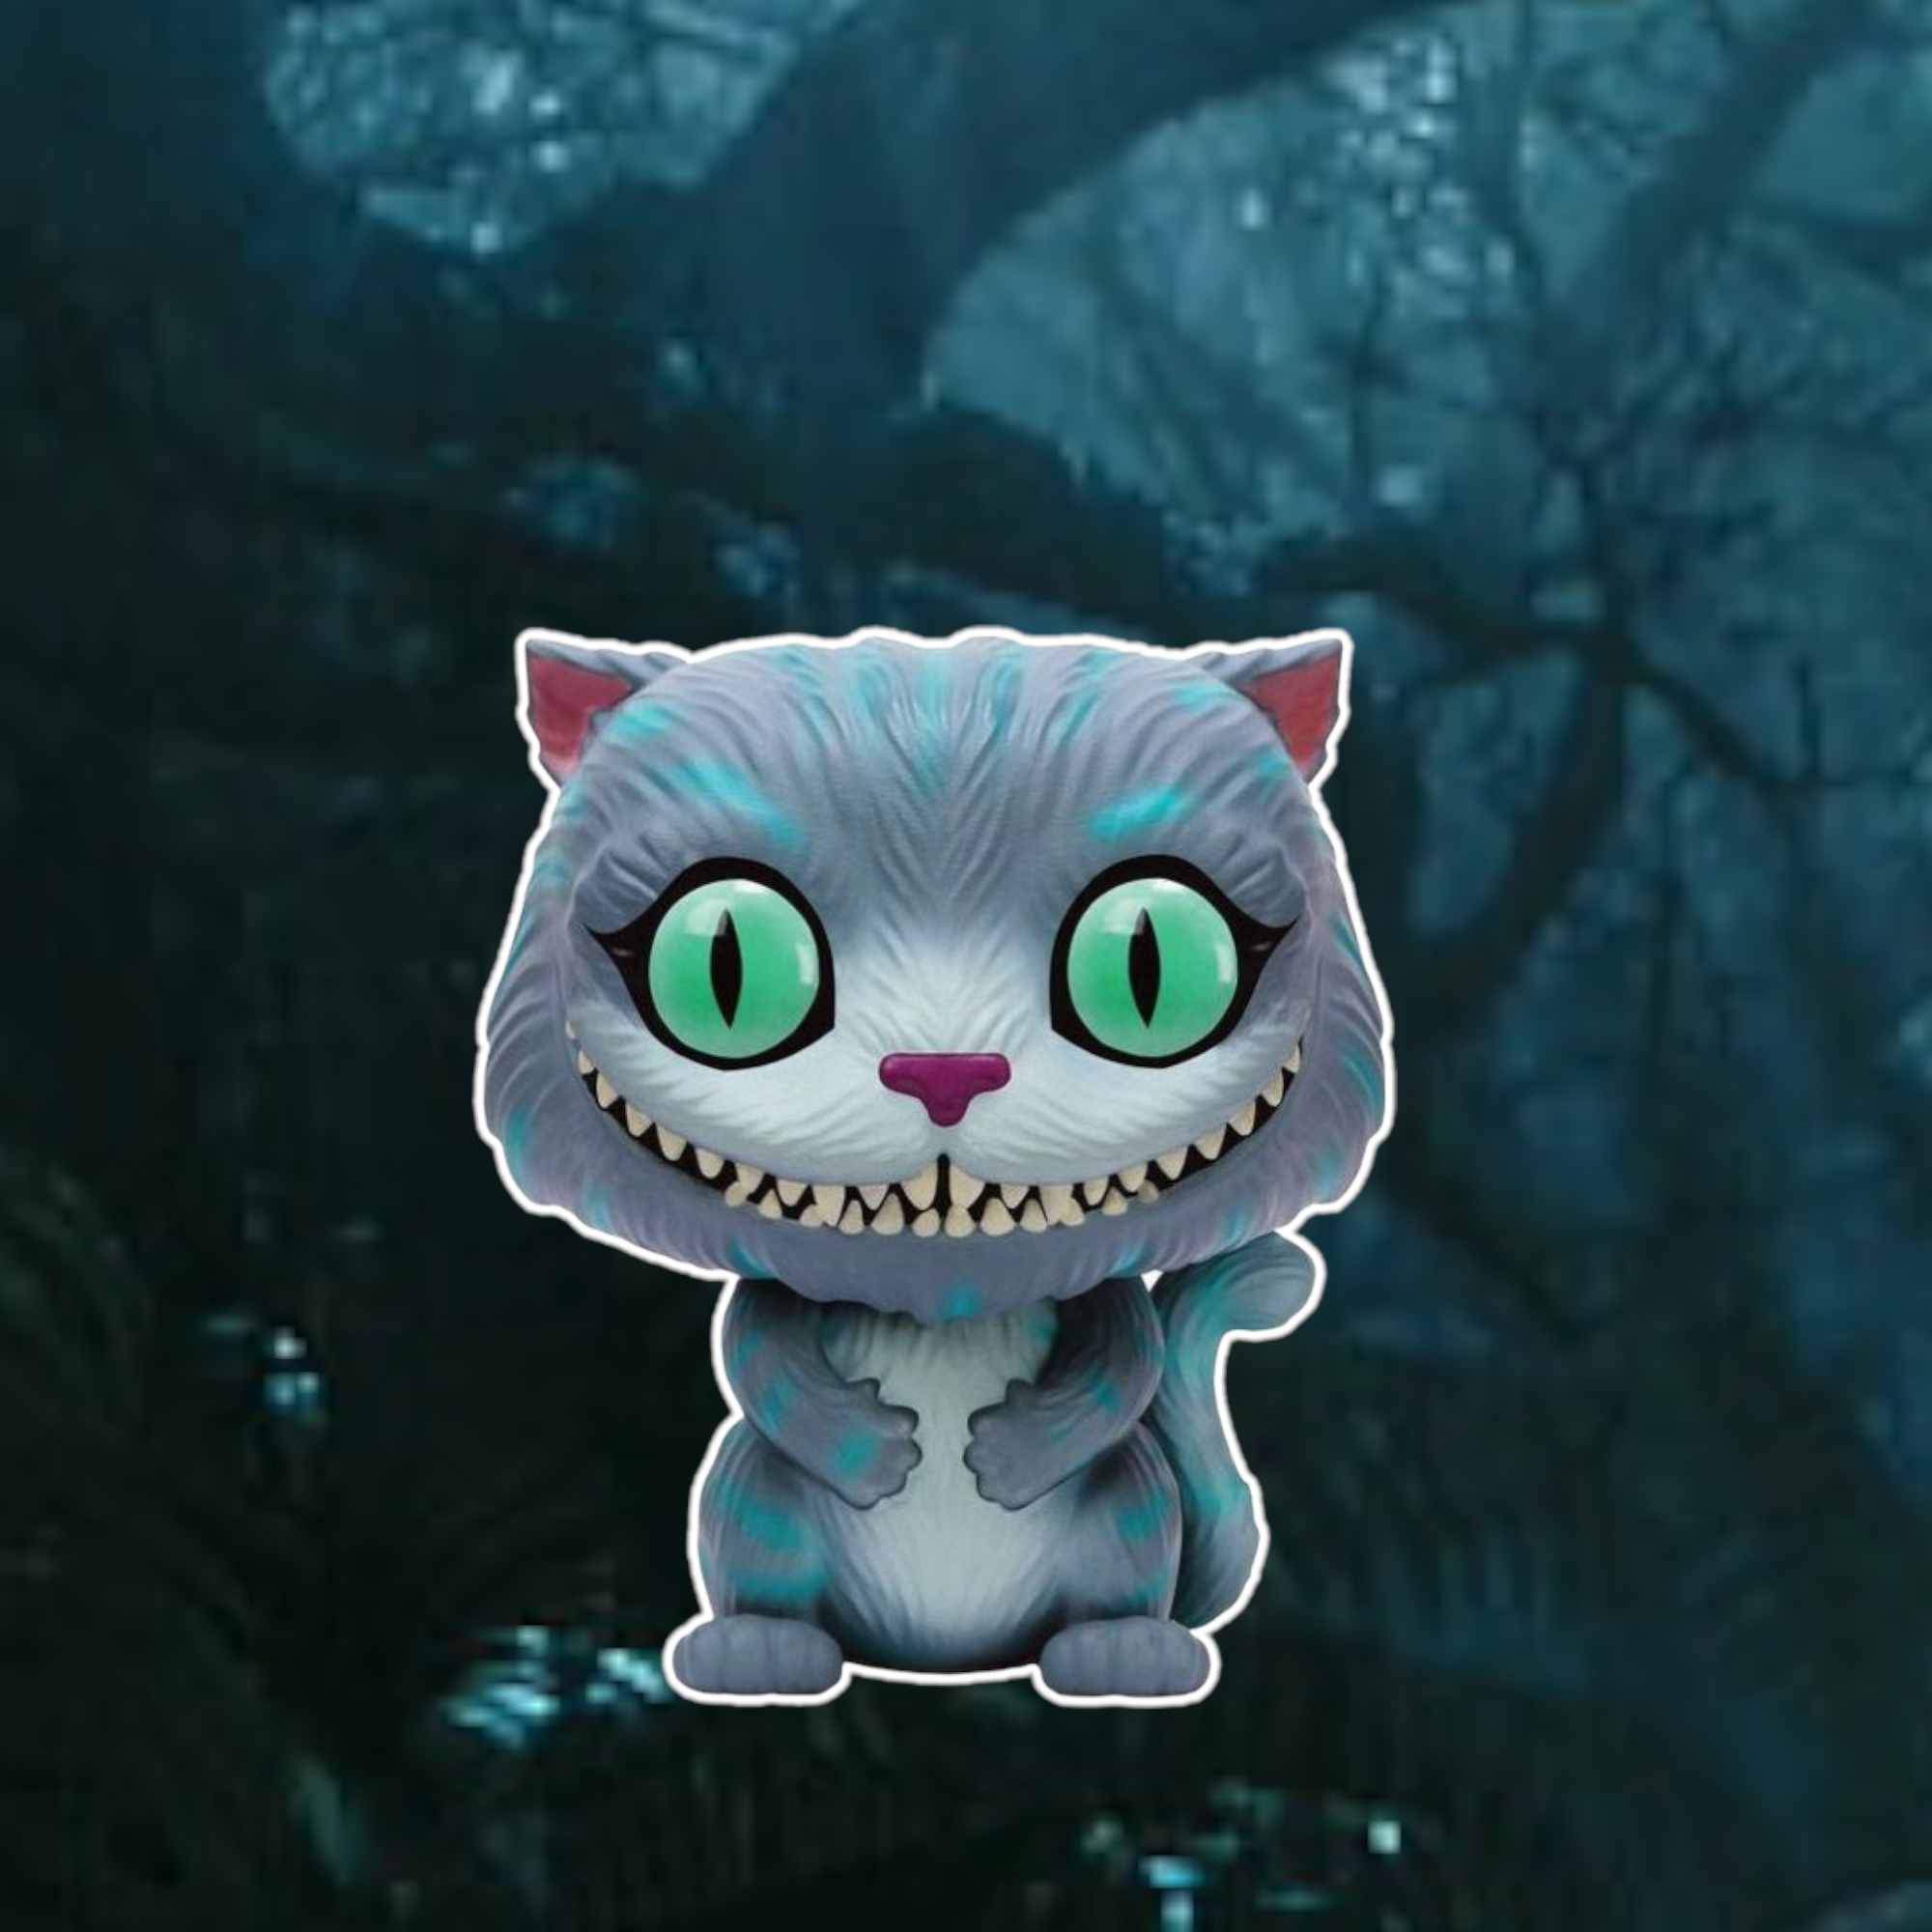 Alice au pays des merveilles - Bobble Head Funko Pop 178 : Cheshire Cat